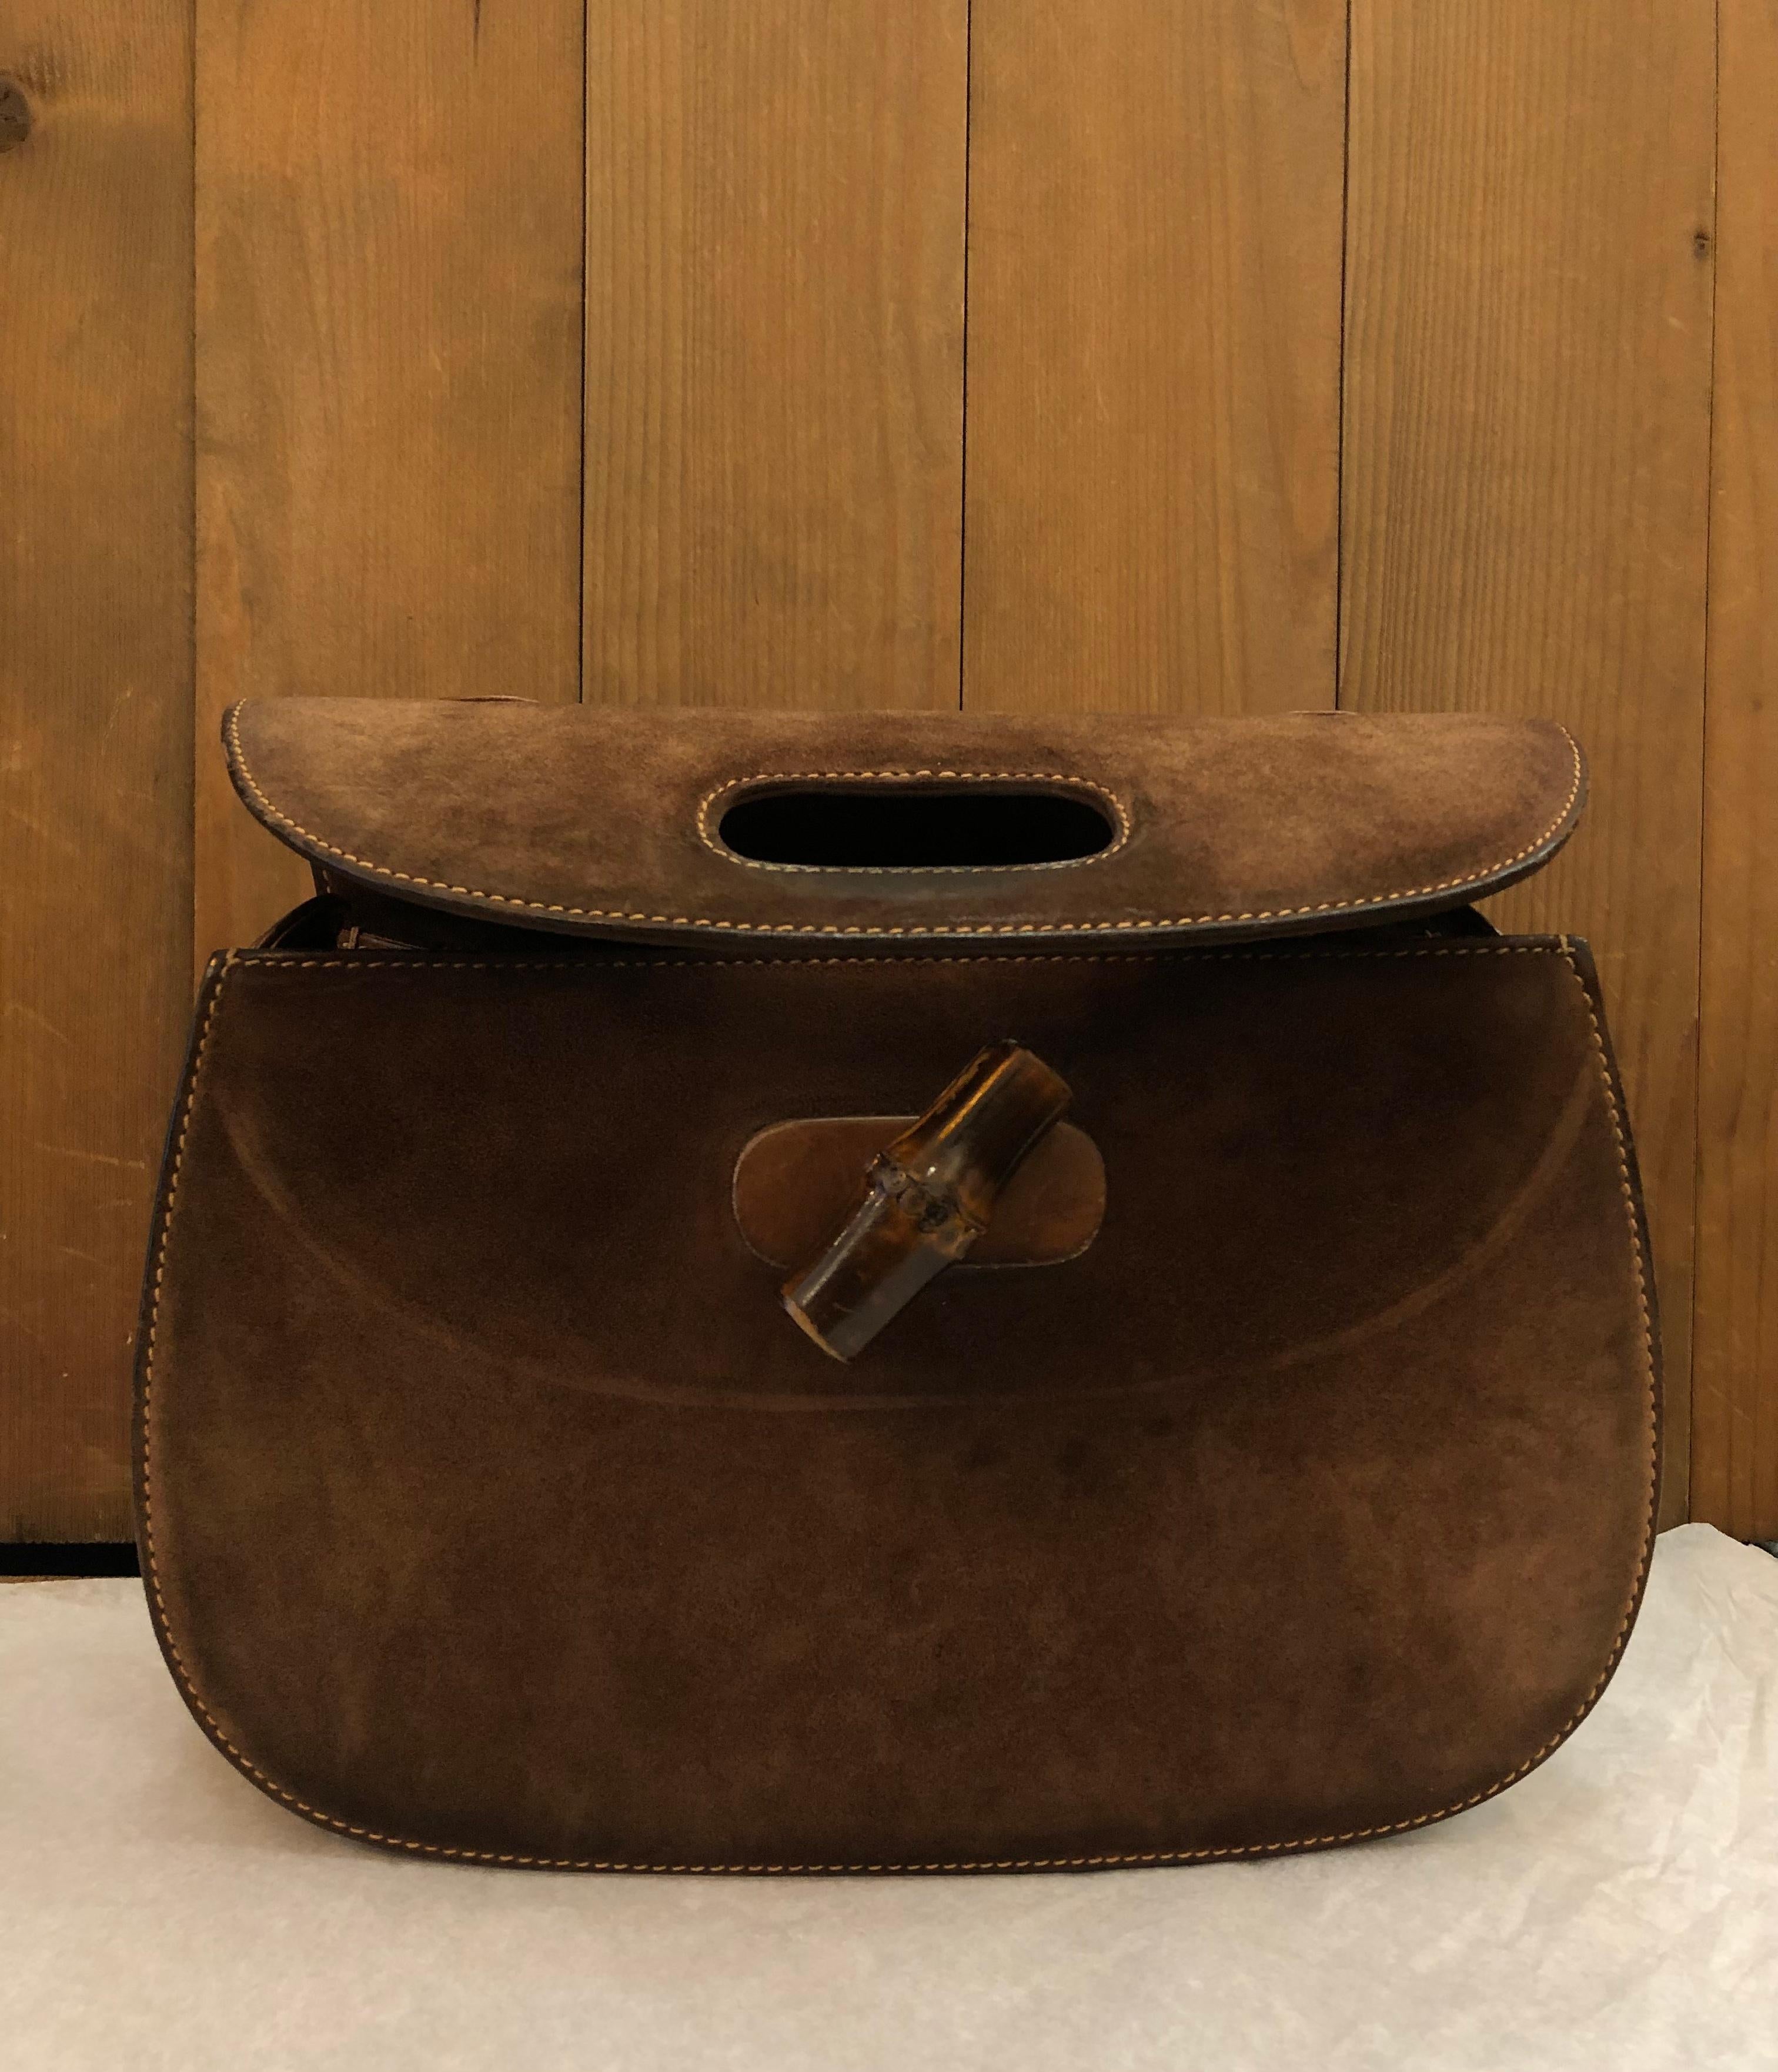 Vintage GUCCI Nubuck Leather Bamboo Top Handle Handbag Brown 5